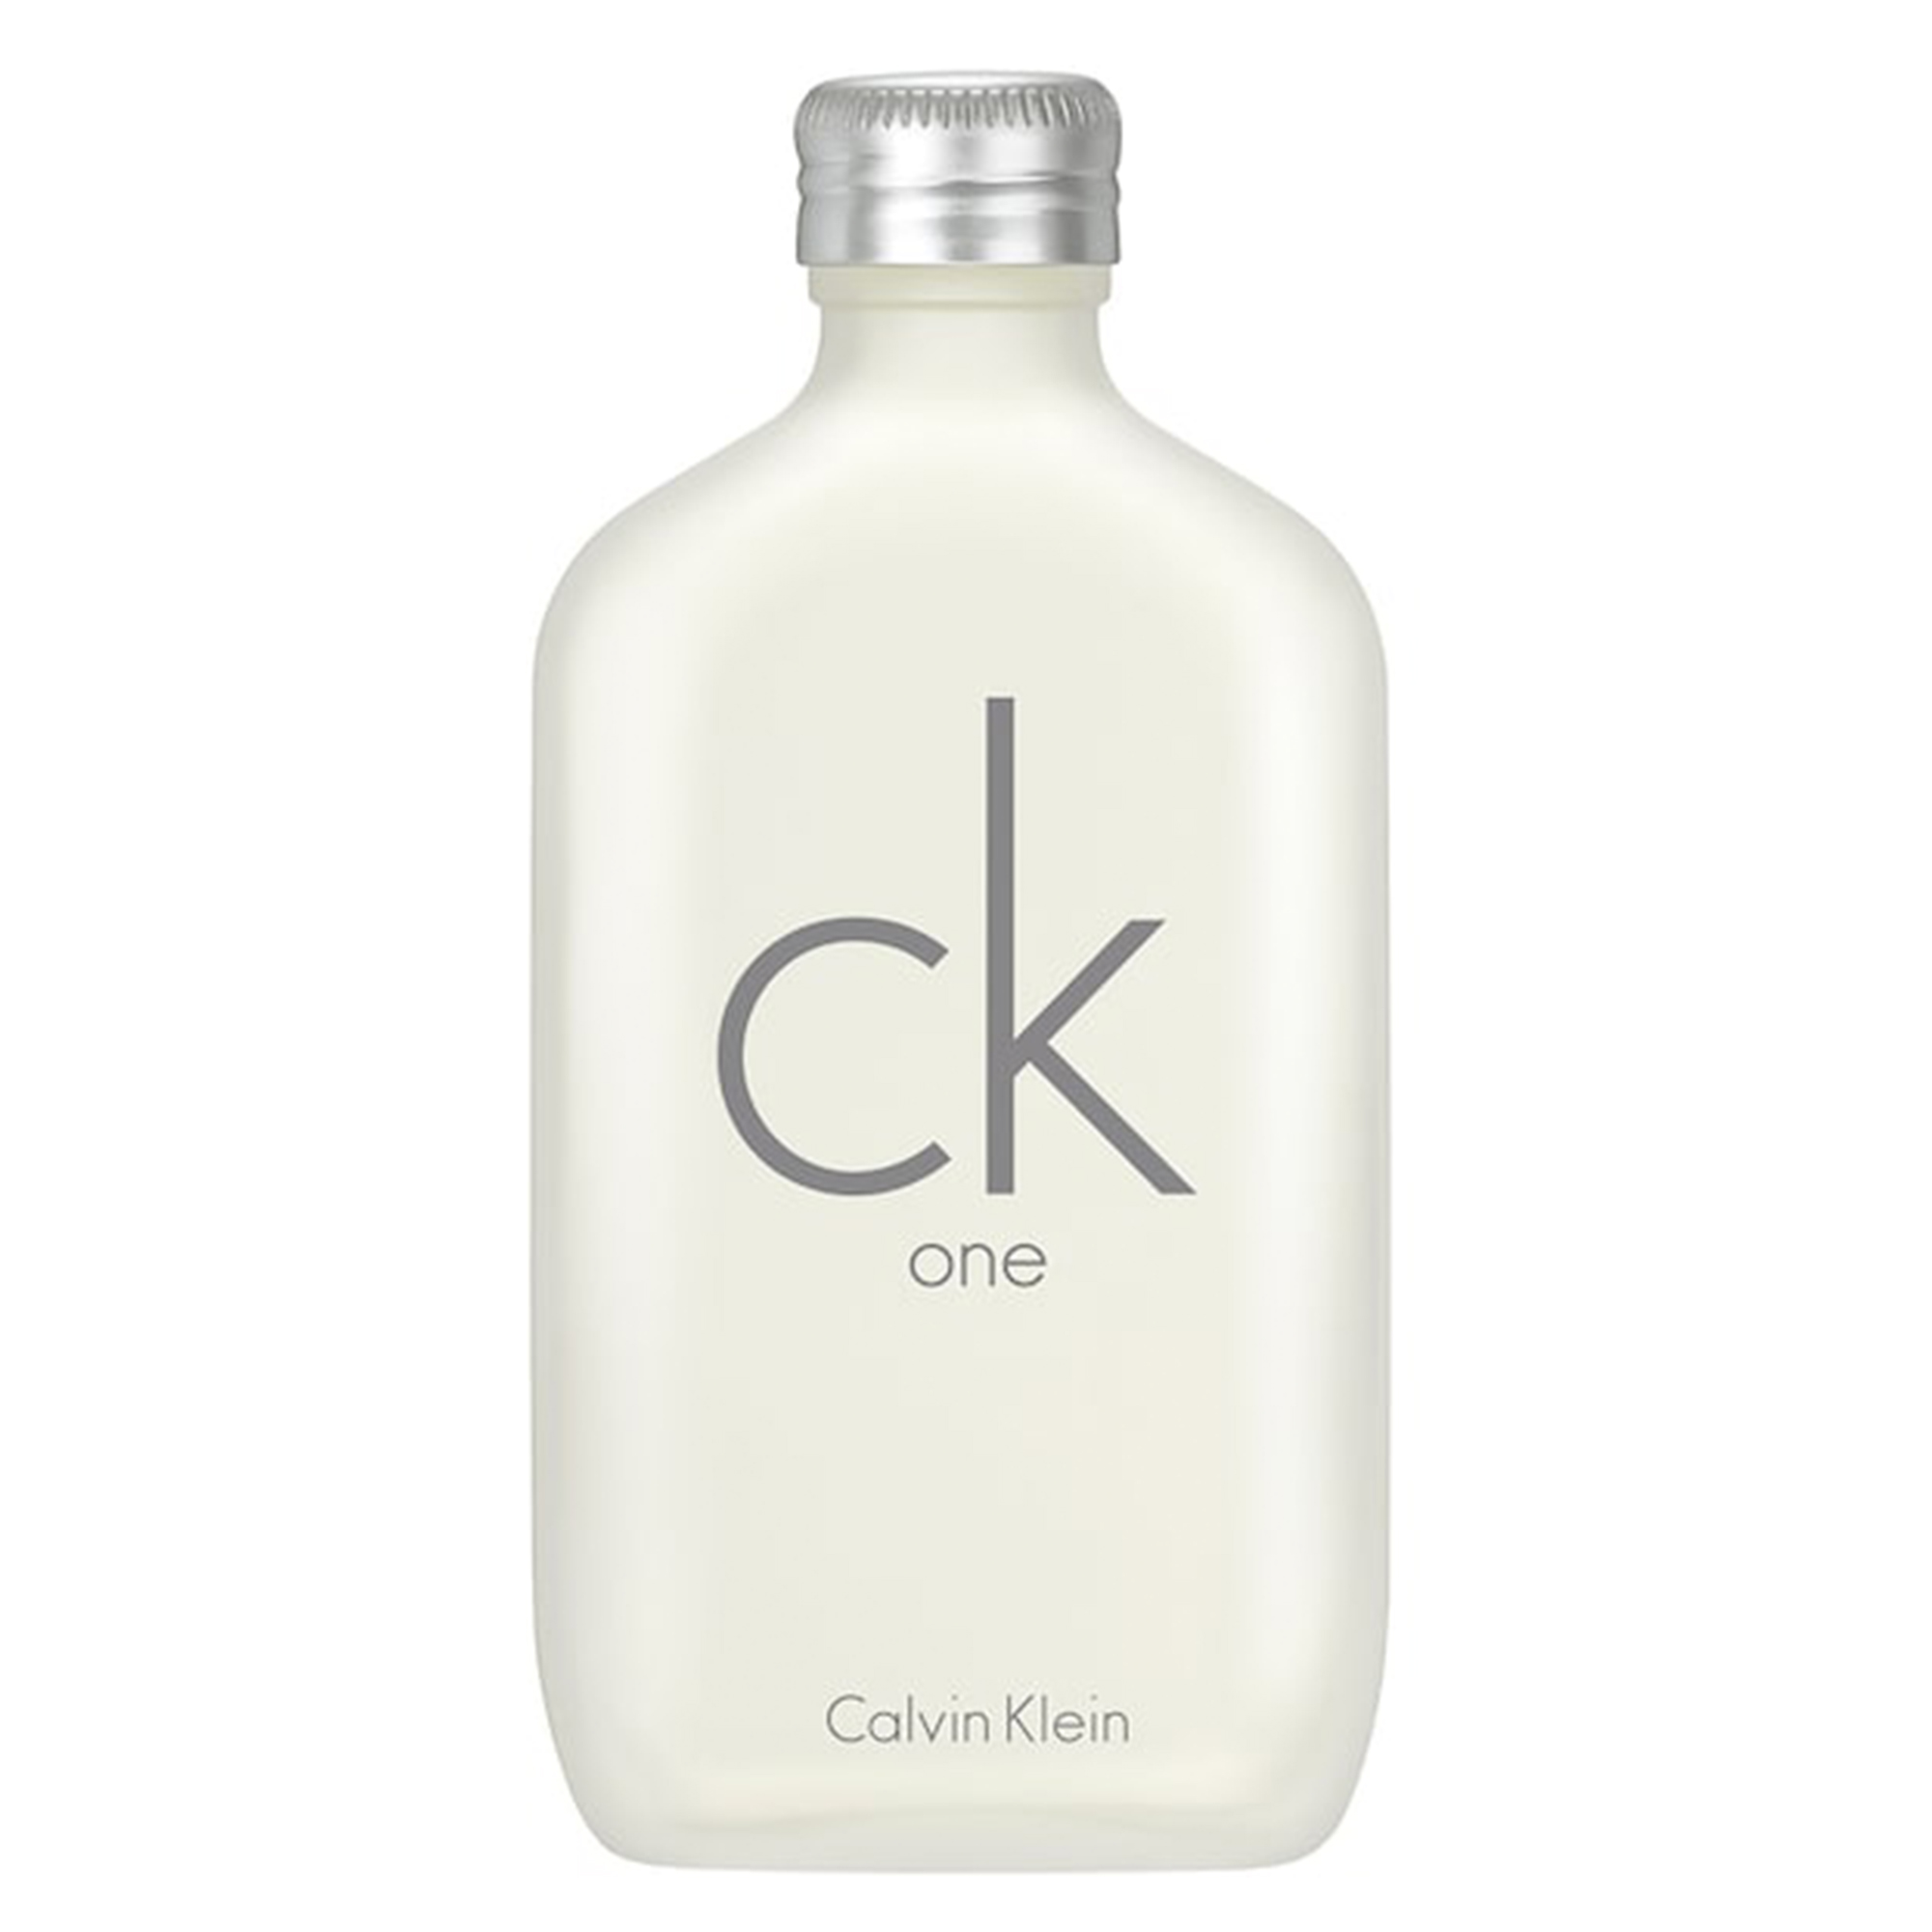 Calvin Klein CK One Eau de Toilette, Unisex Perfume, 1.6 oz - image 1 of 5